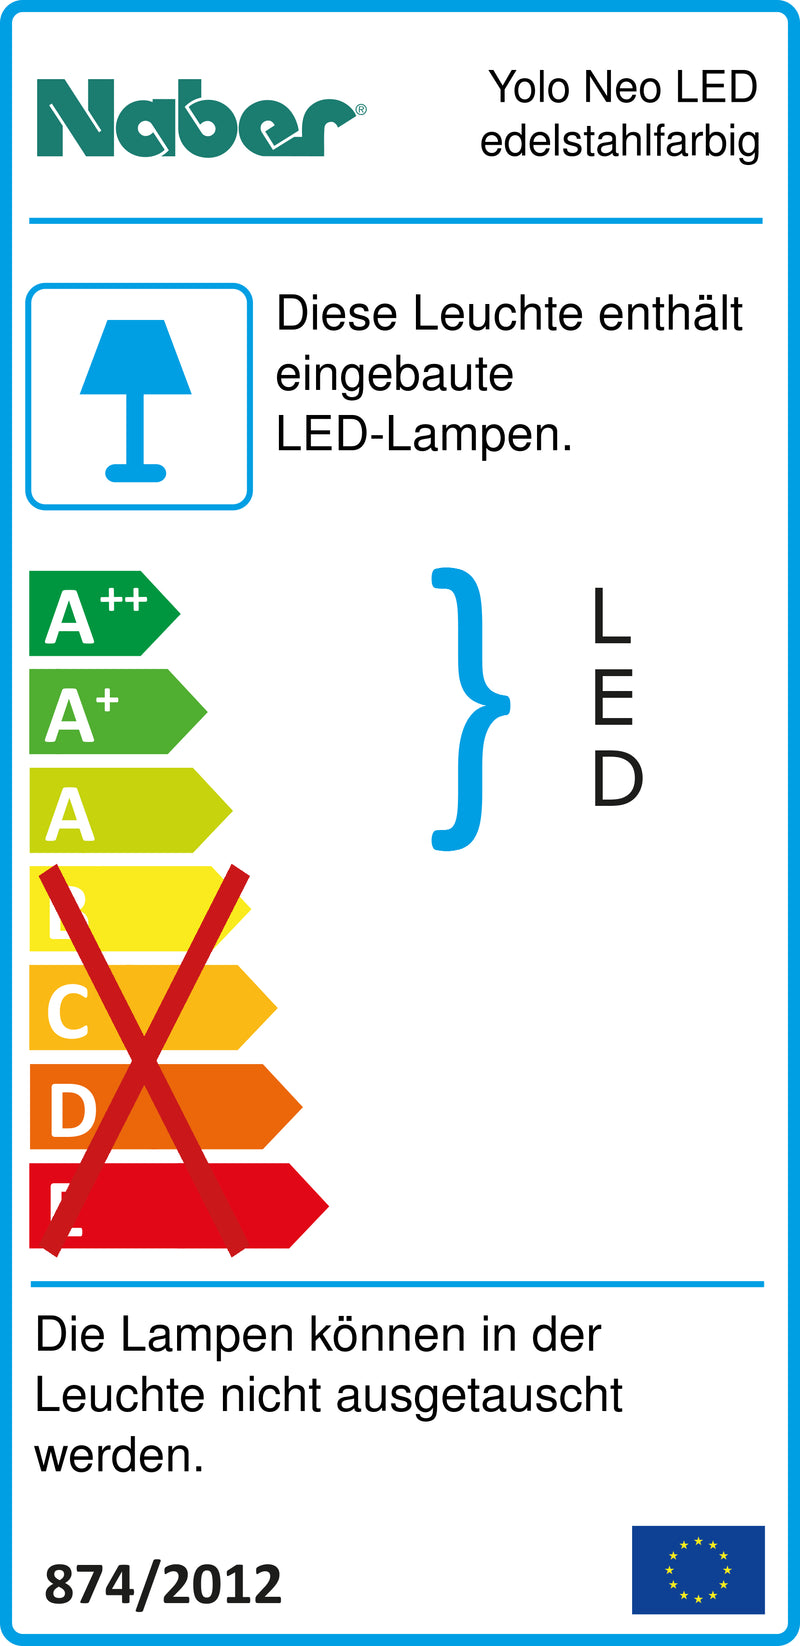 E-Label zu Zeichnung zu Yolo Neo LED edelstahlfarbig als Variante Set-2, 3000 K warmweiß von Naber GmbH in der Kategorie Lichttechnik in Österreich auf conceptshop.at